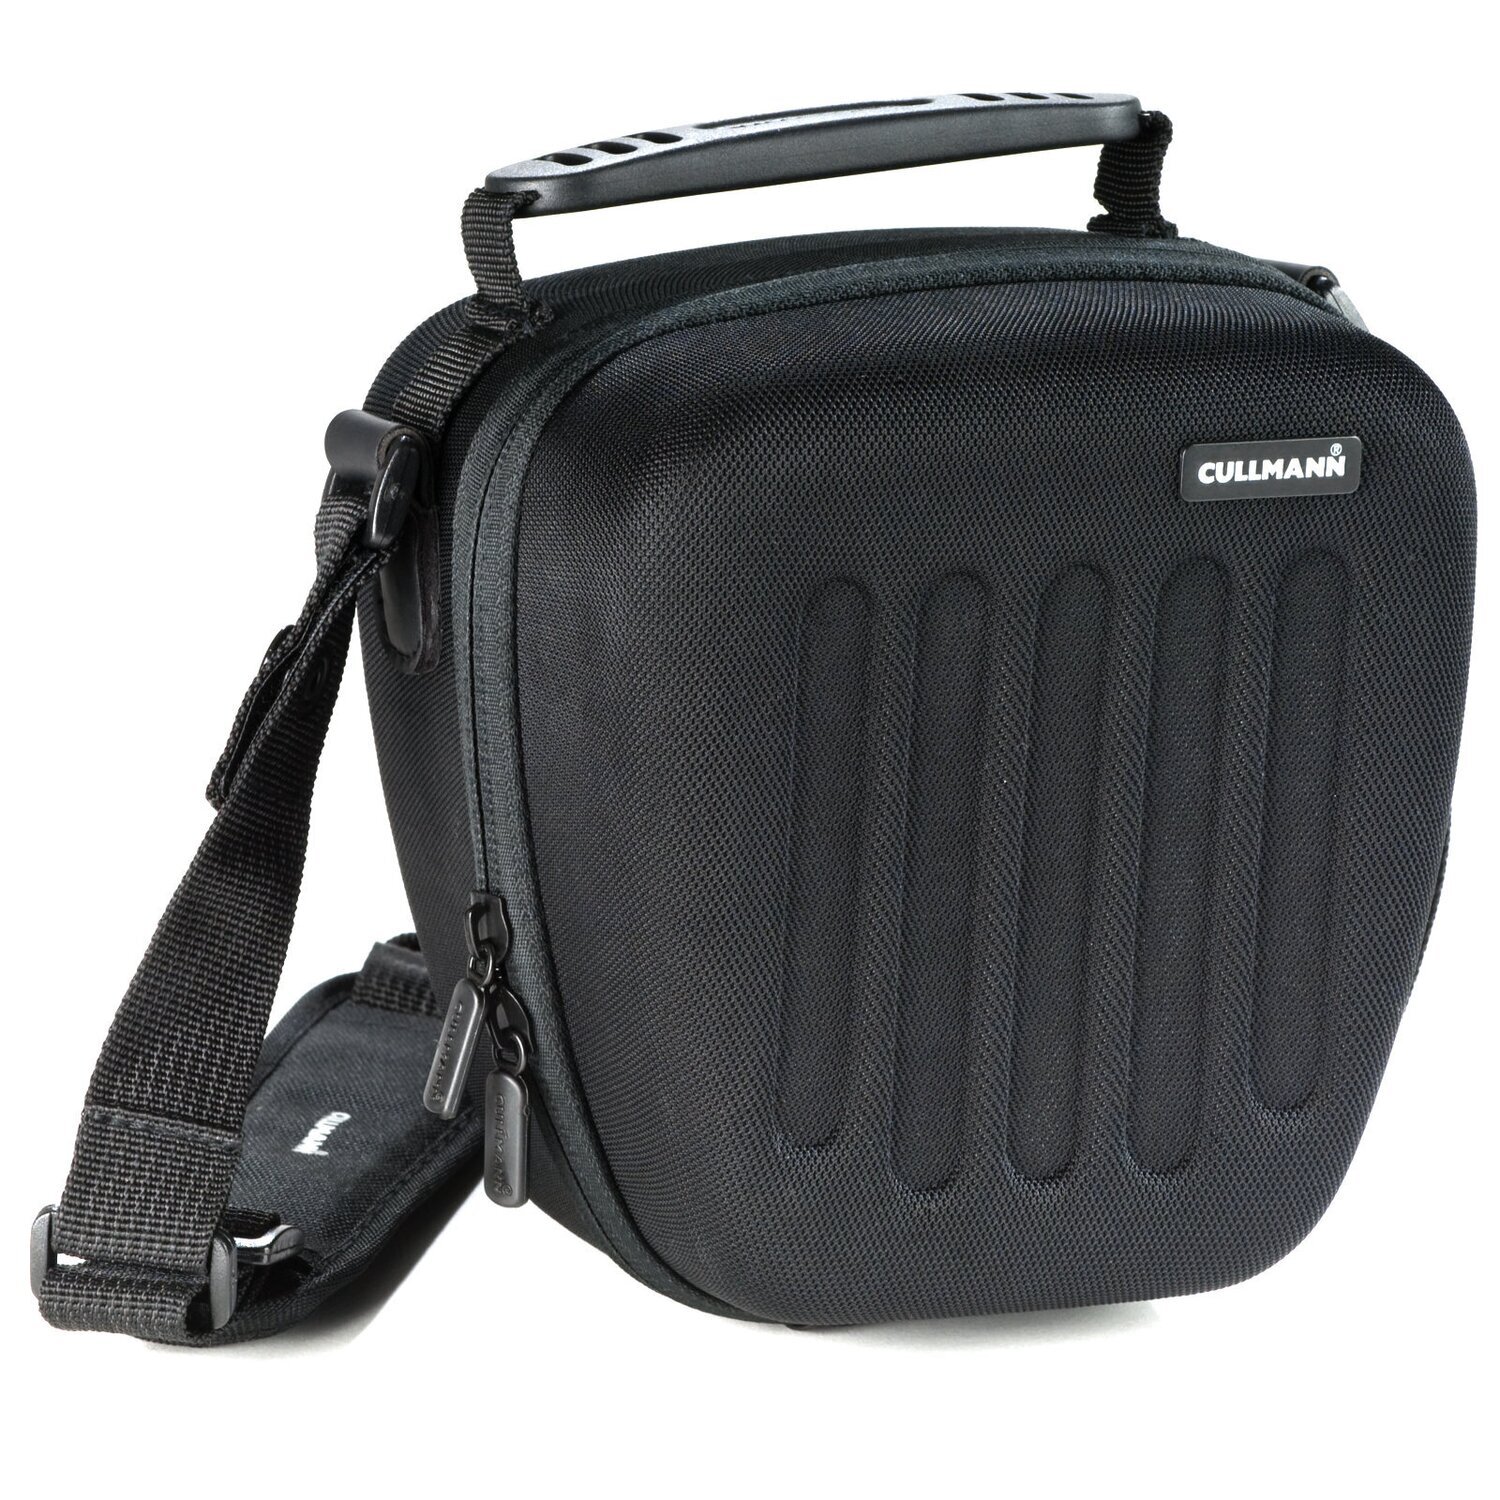 Hardcase Hartschalen Kameratasche passend für Panasonic Lumix FZ82 FZ83